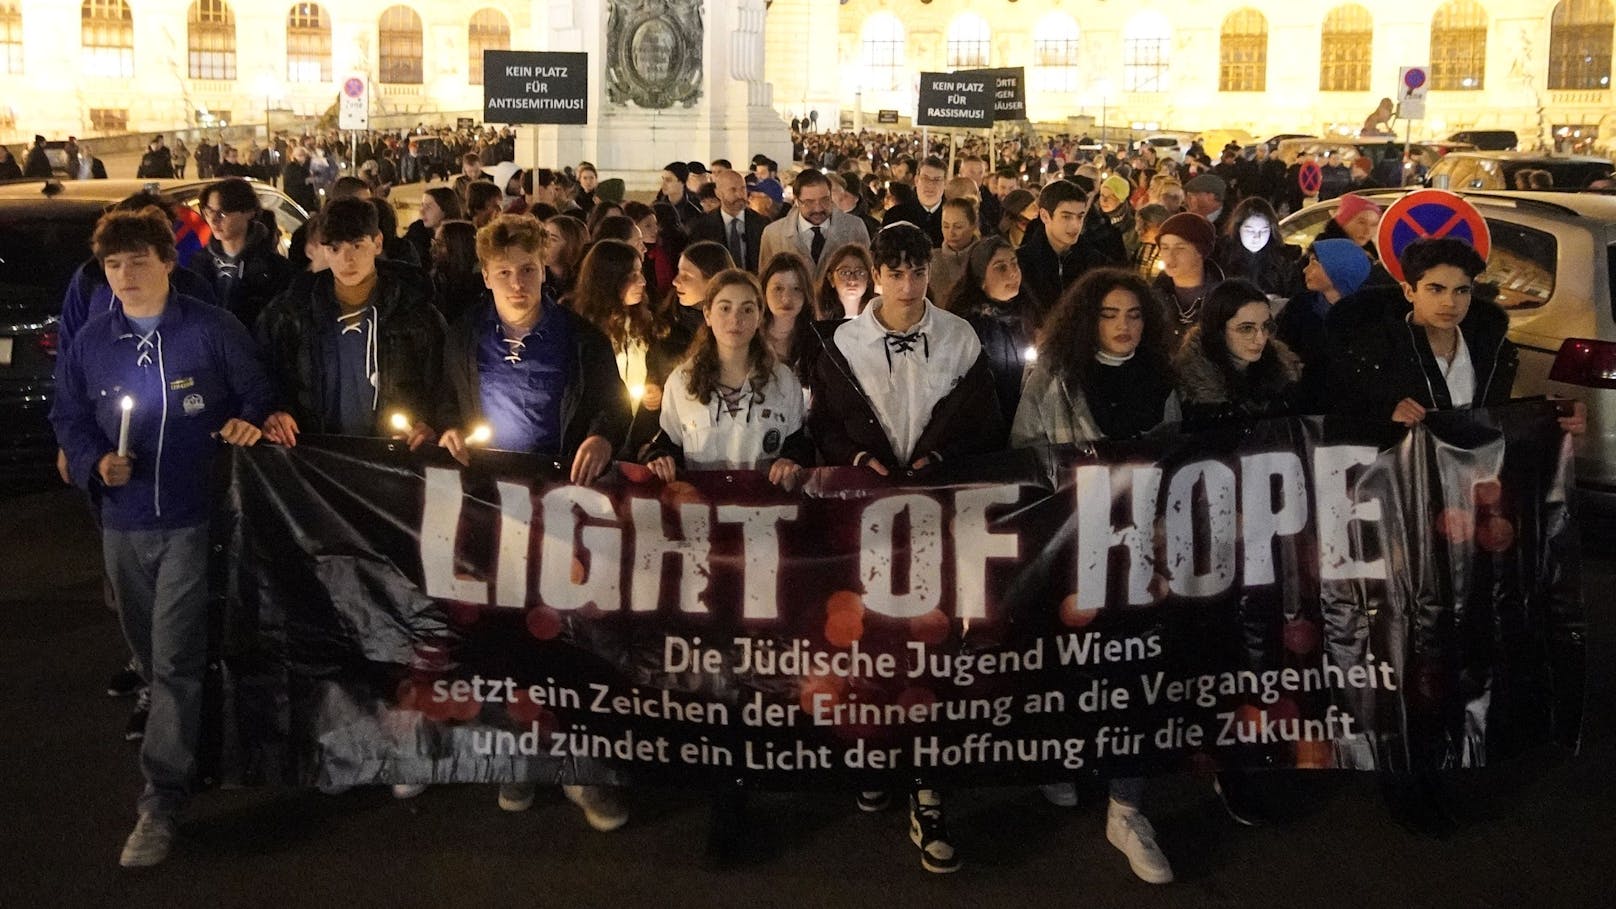 Lights of Hope – von der jüdischen Jugend initiierter Marsch der Hoffnung und zum Gedenken an den 9. November 1938